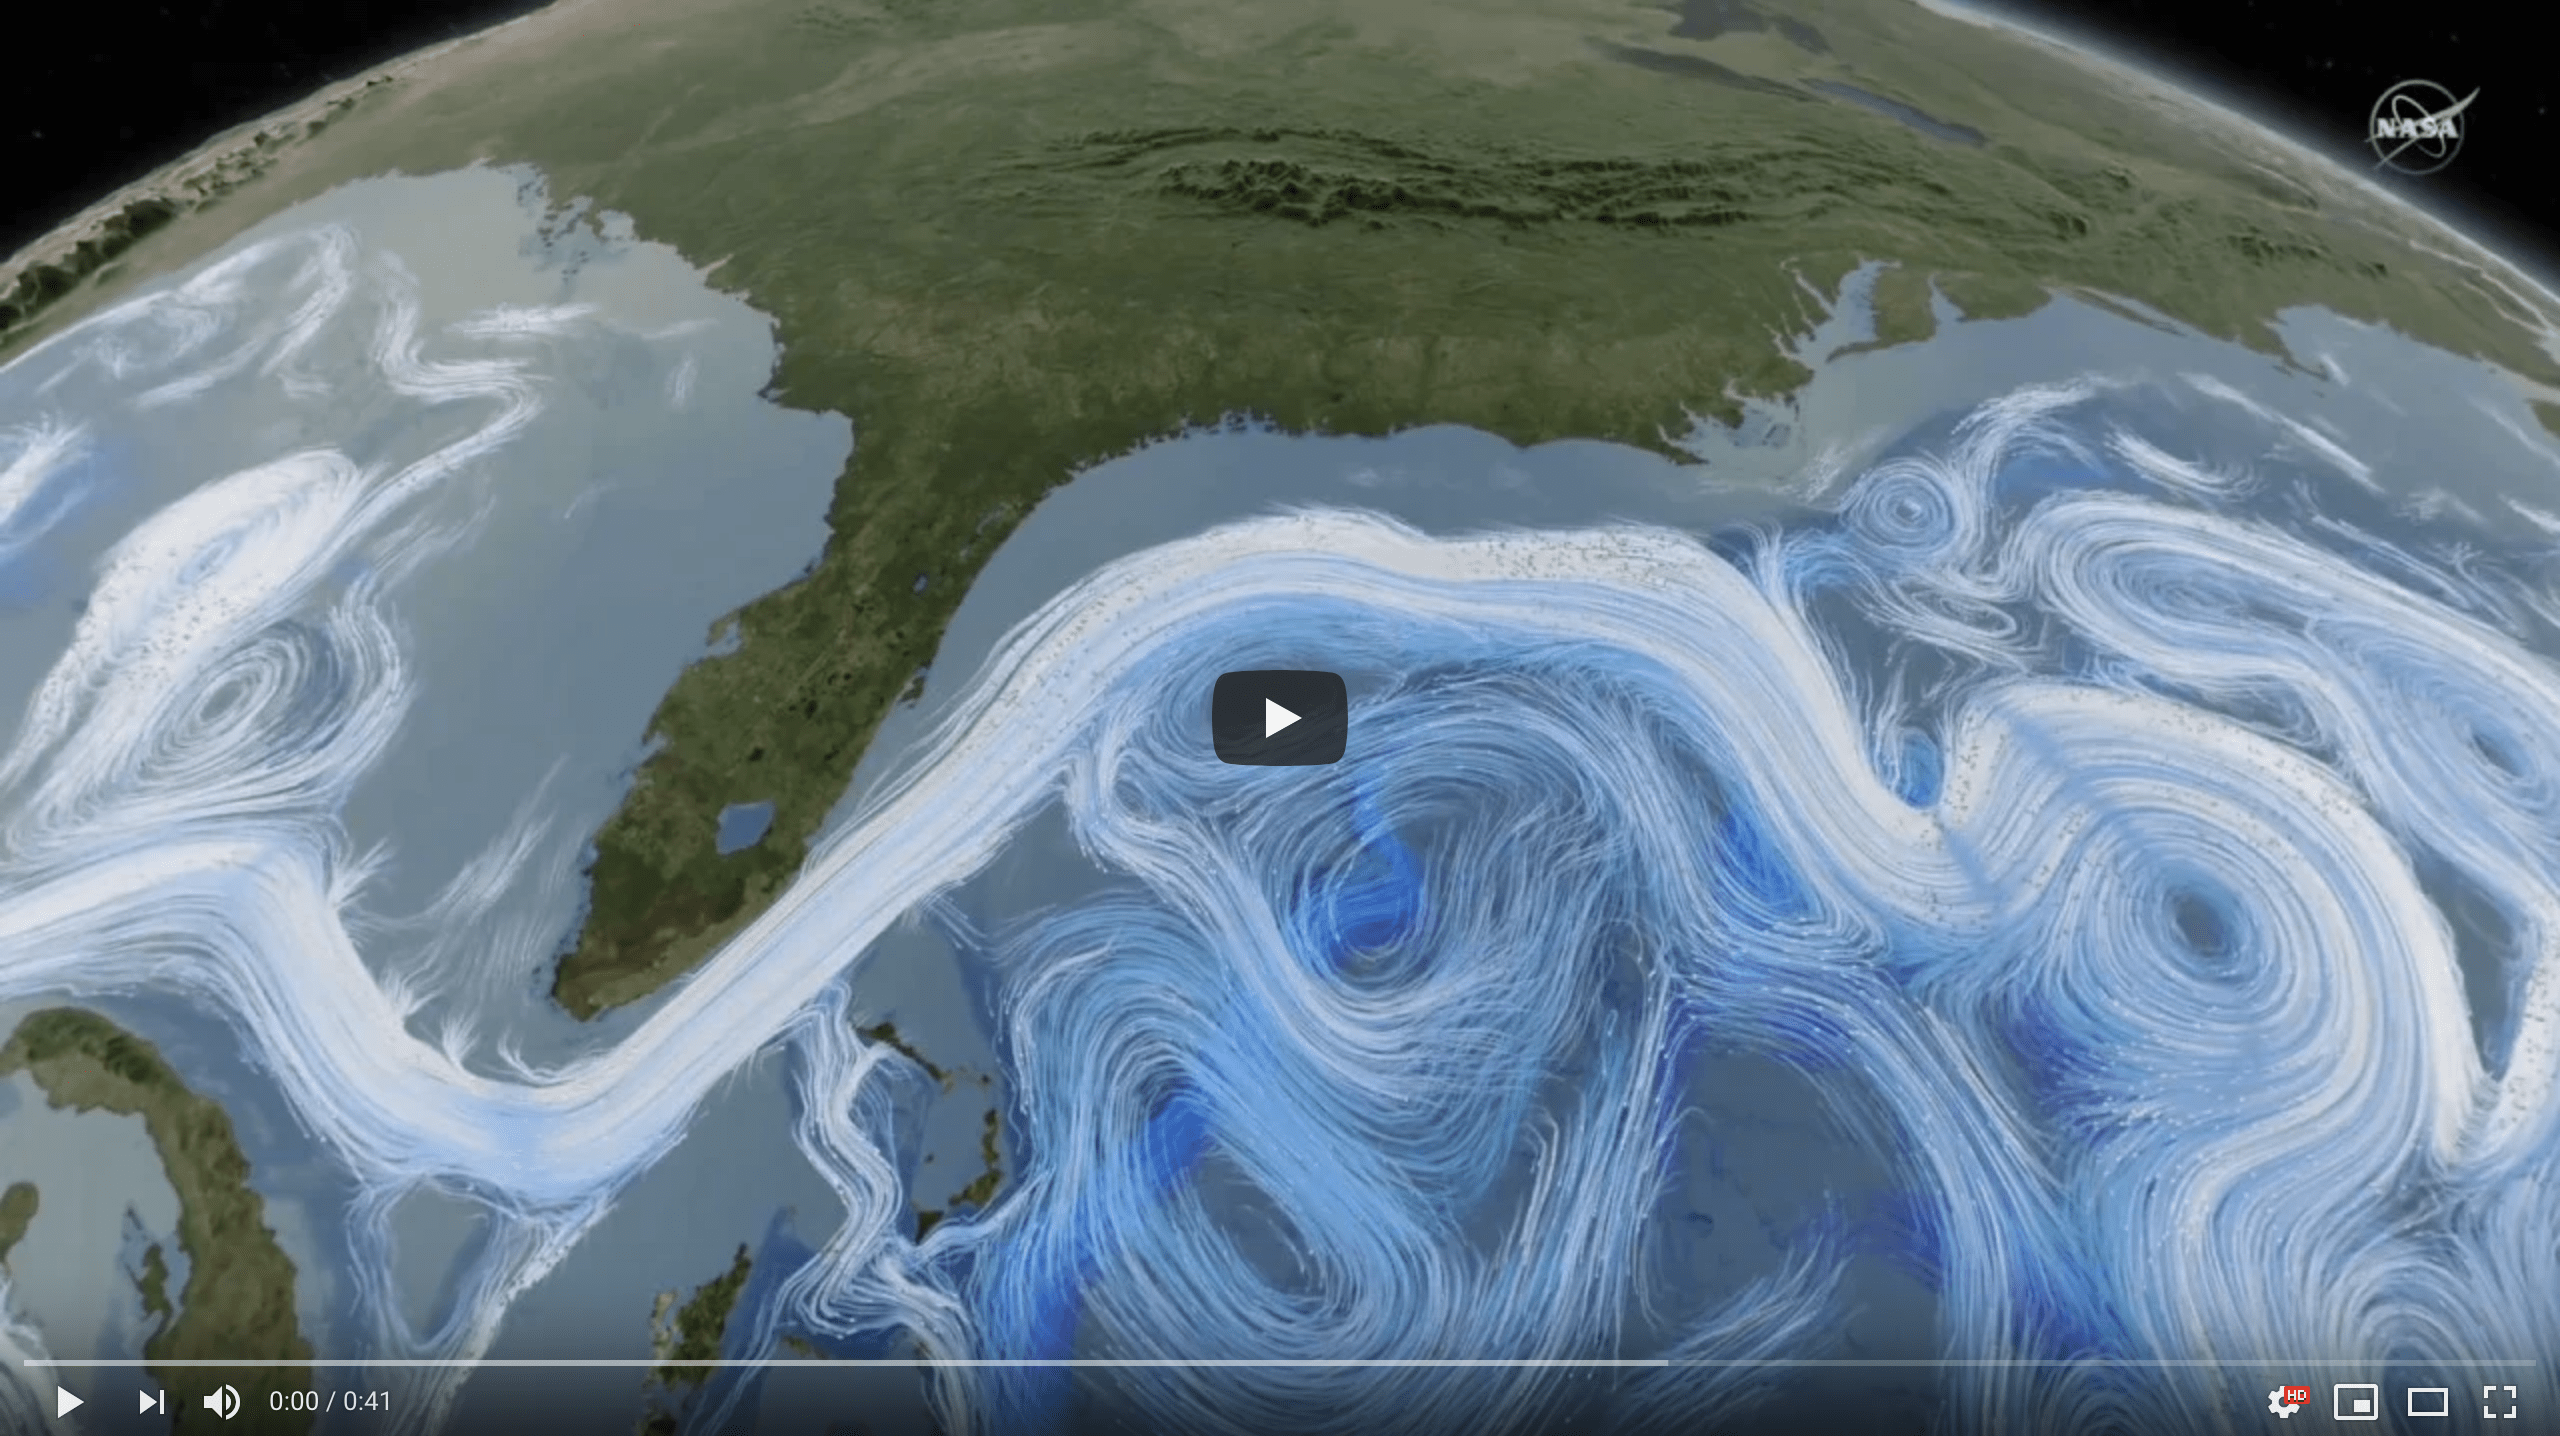 Imagen de portada del vídeo de la Nasa: La circulación oceánica desempeña un papel importante en la absorción de carbono de la atmósfera. Crédito: Centro de Vuelo Espacial Goddard de la NASA